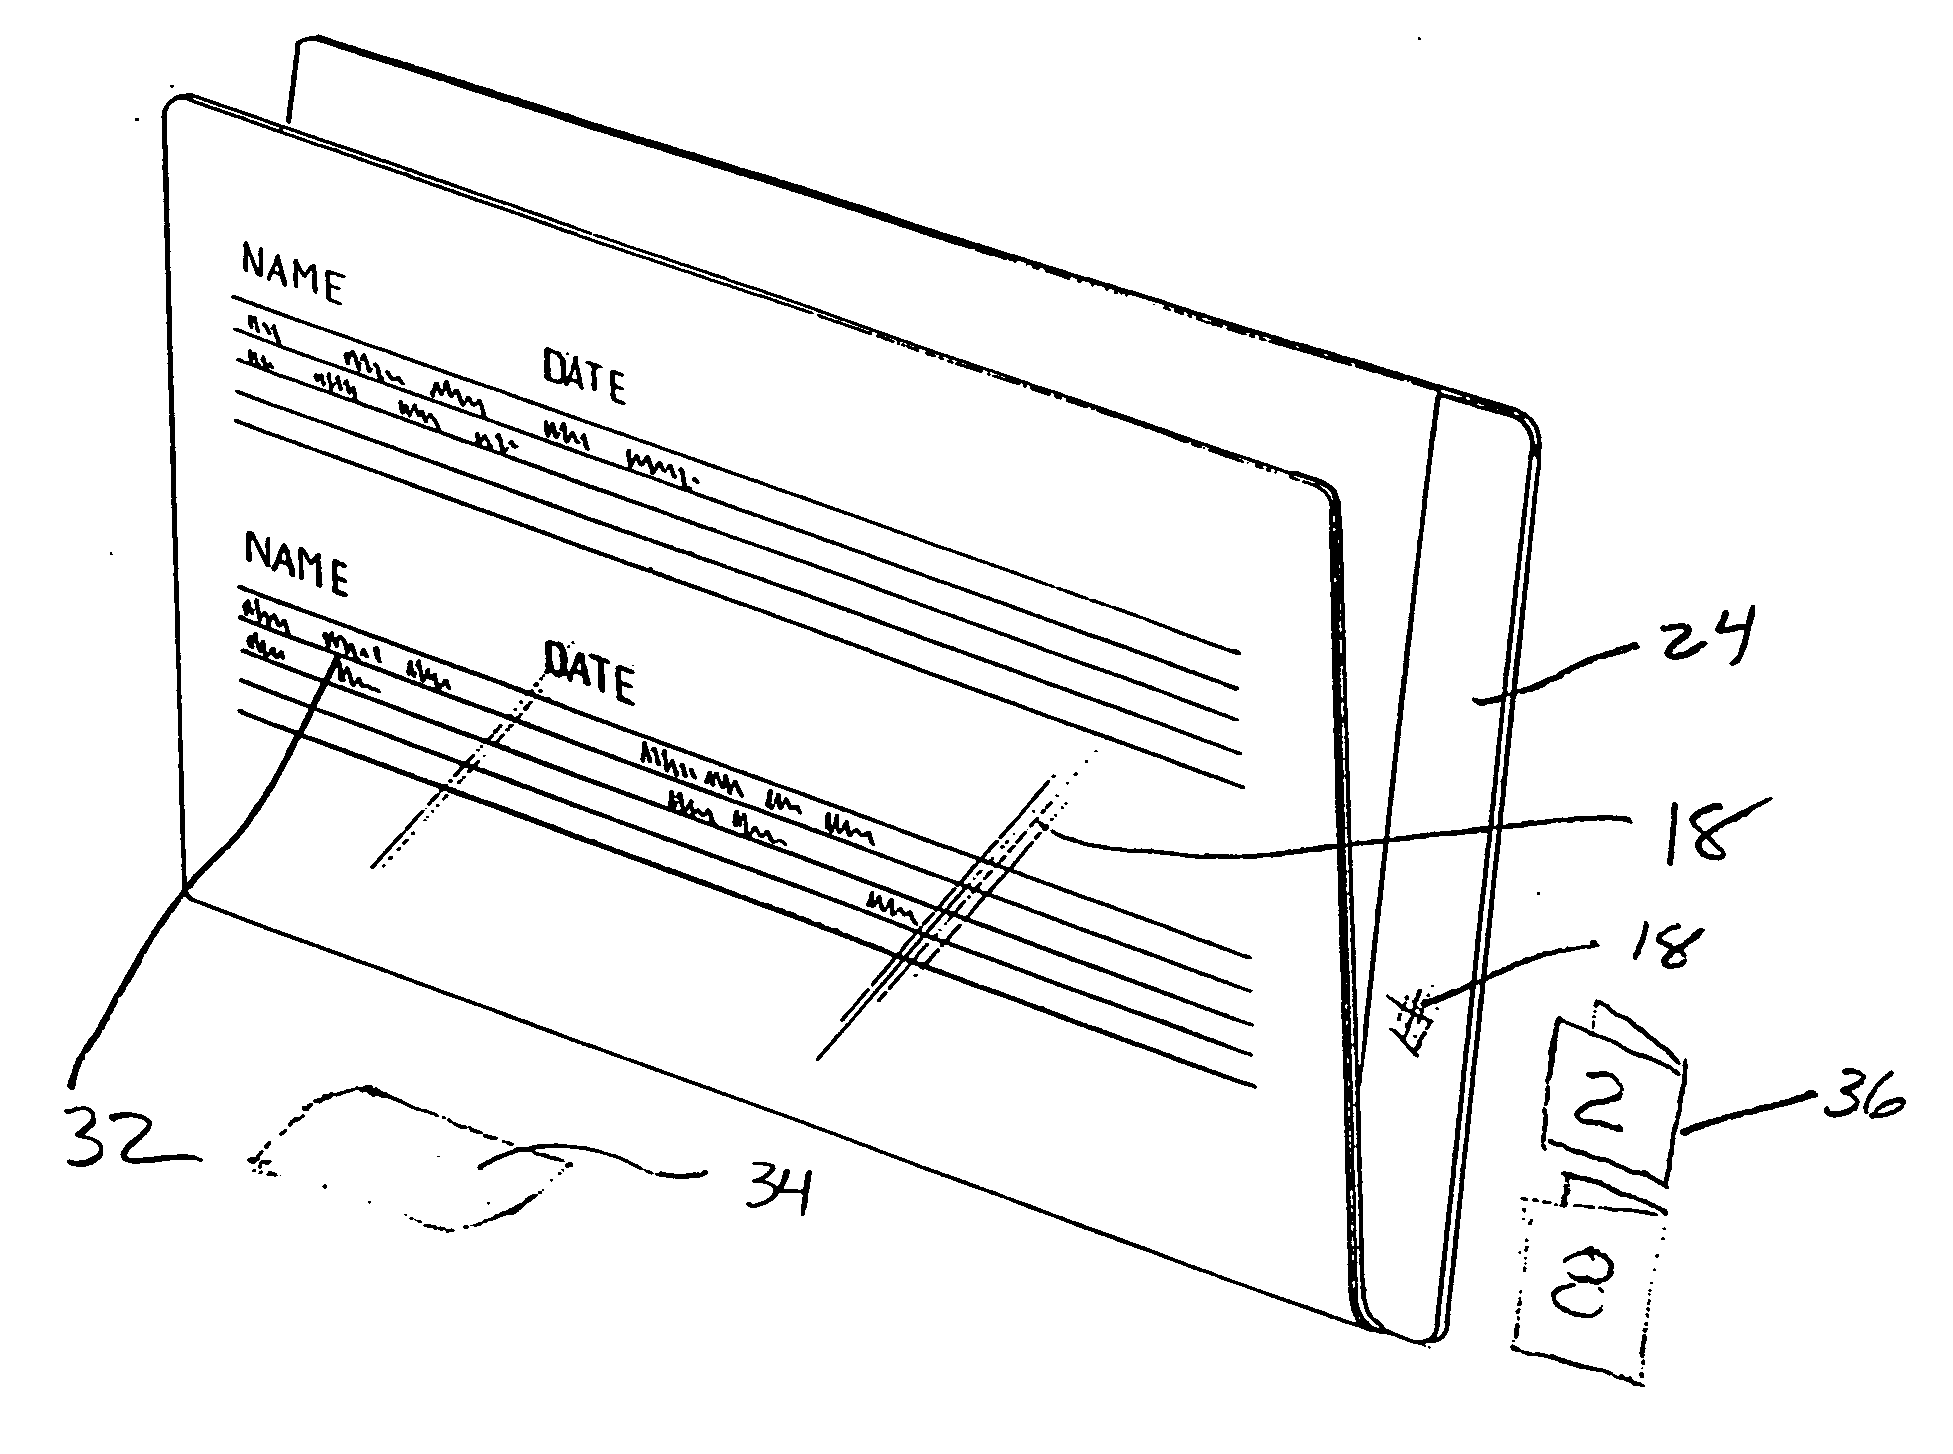 Composite file folder